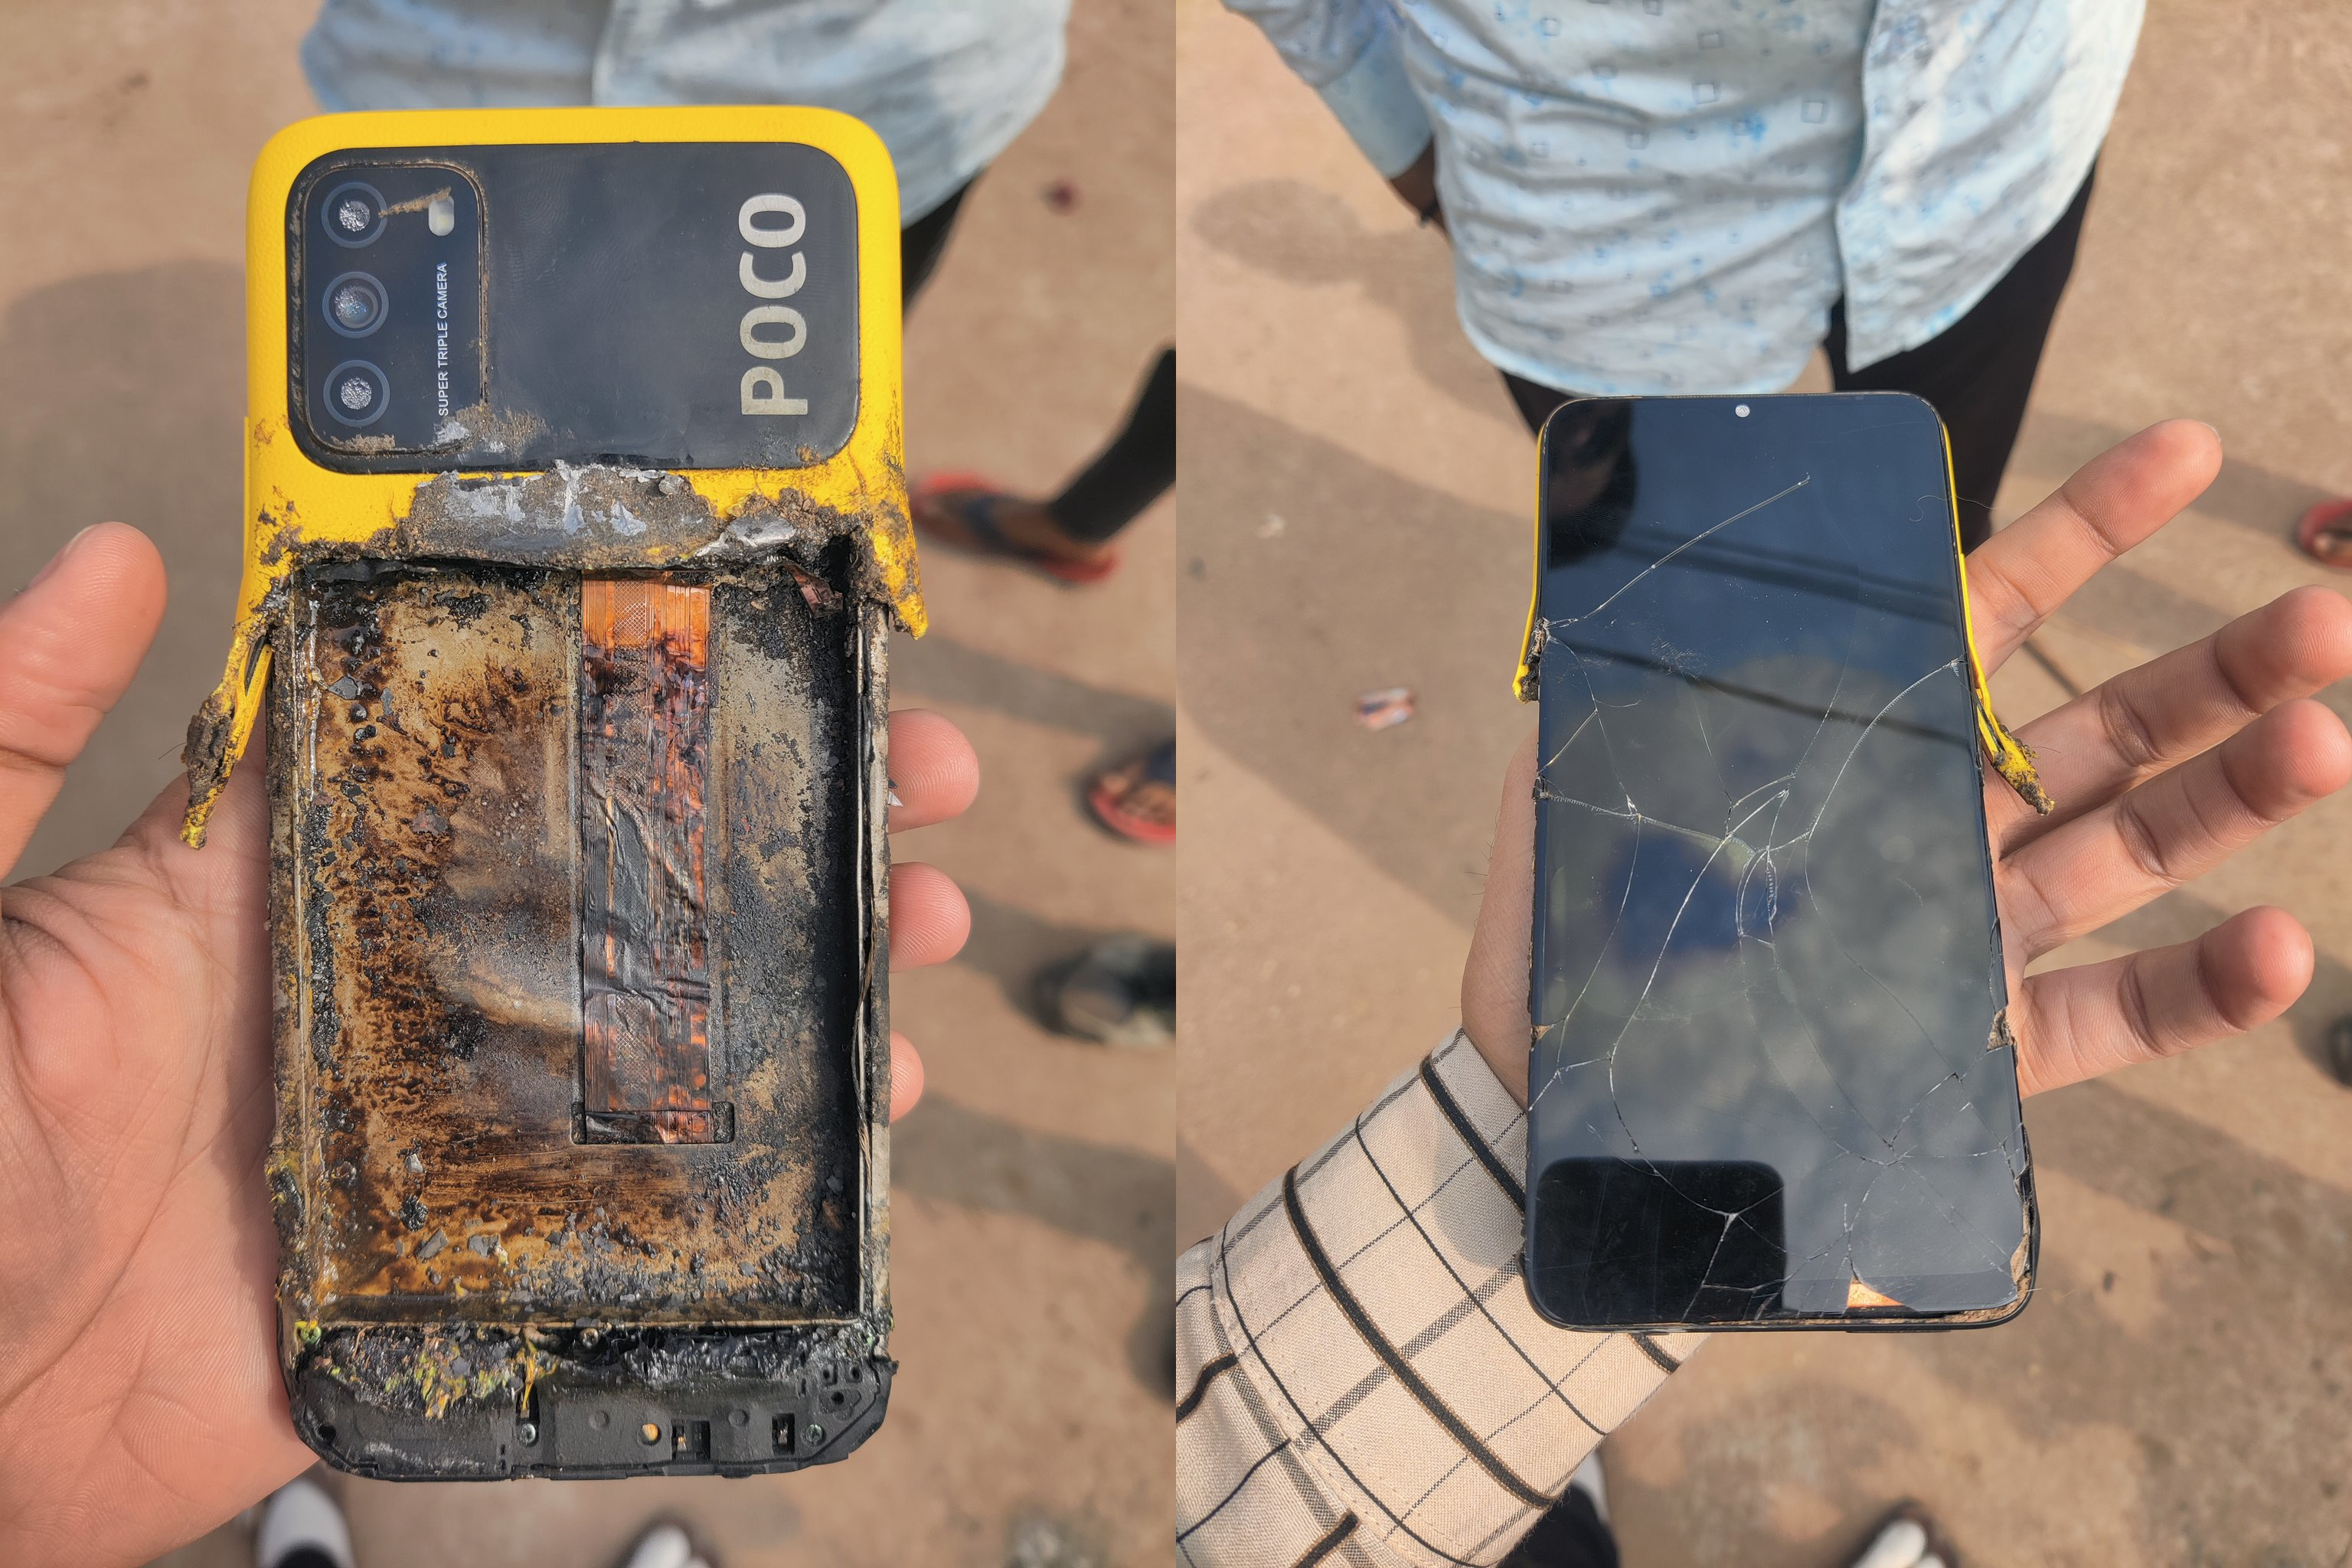 "Este es el peor servicio y prueba de calidad": otro teléfono inteligente de submarca de Xiaomi, el Poco M3, explotó